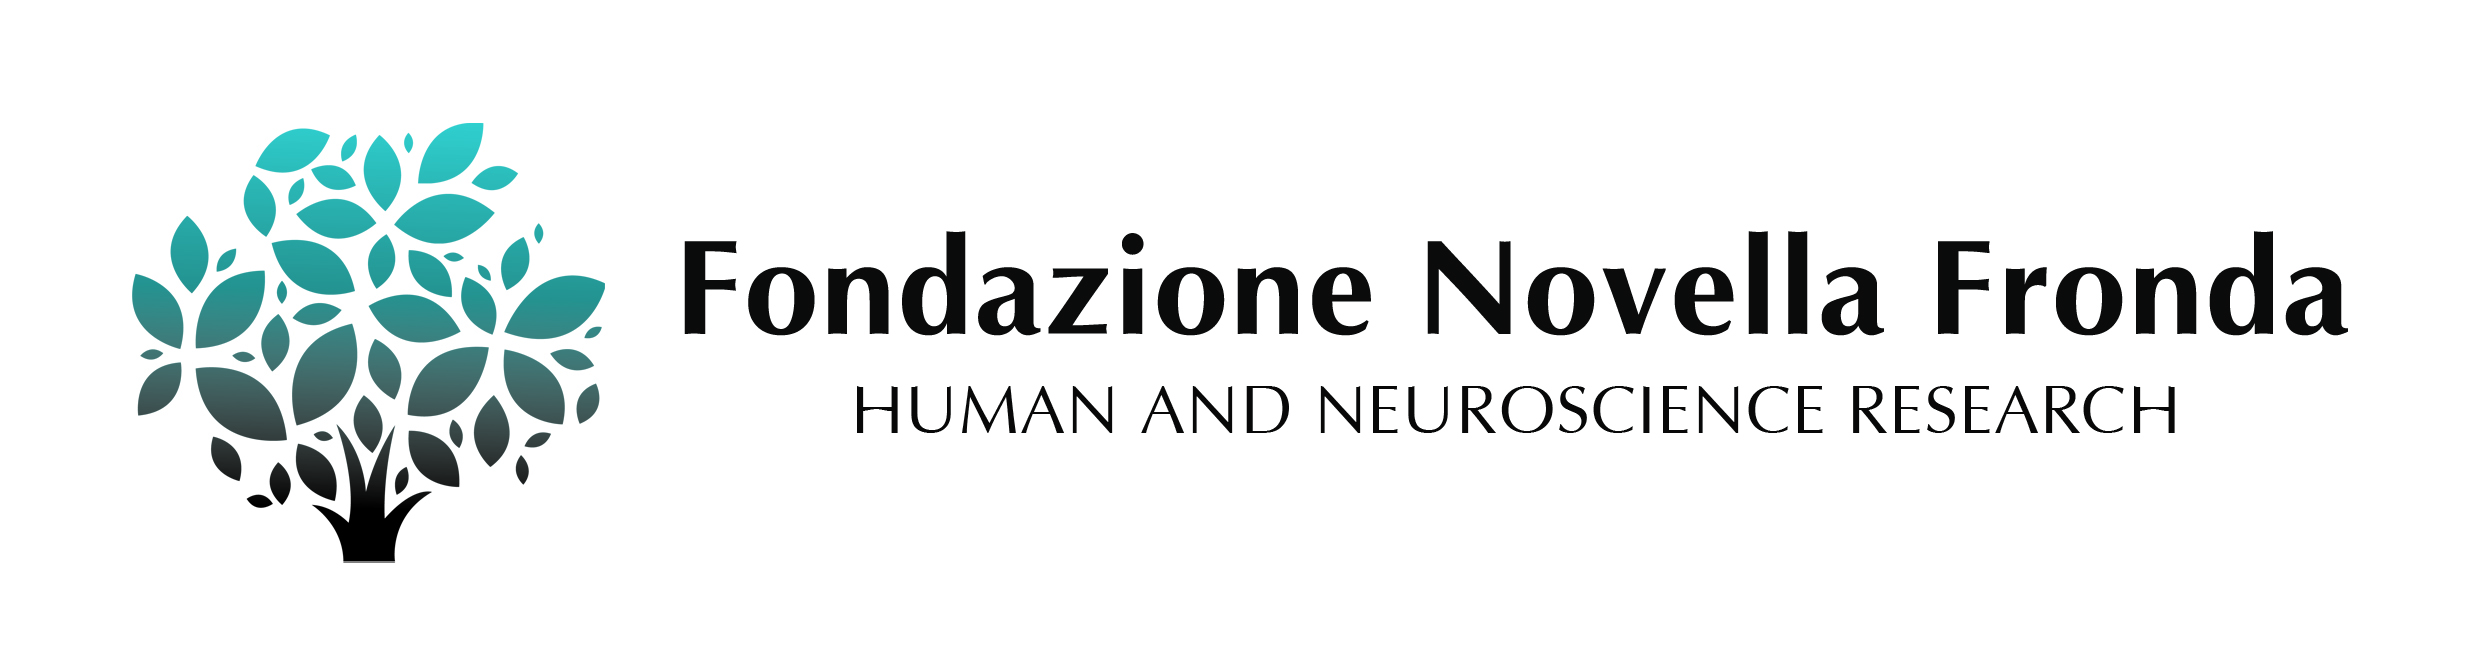 Logo Fondazione_4 modificato+logo prova